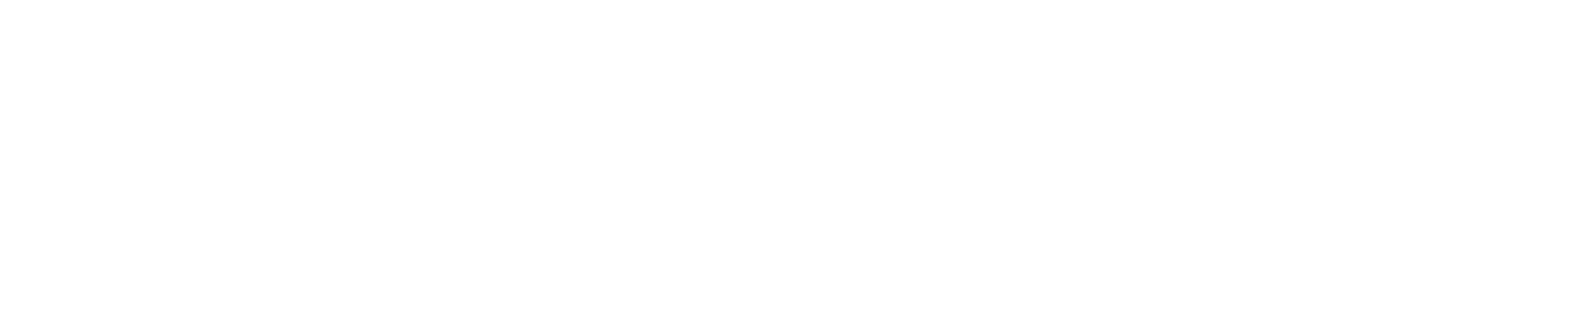 Valkyrie ETF logo grand pour les fonds sombres (PNG transparent)